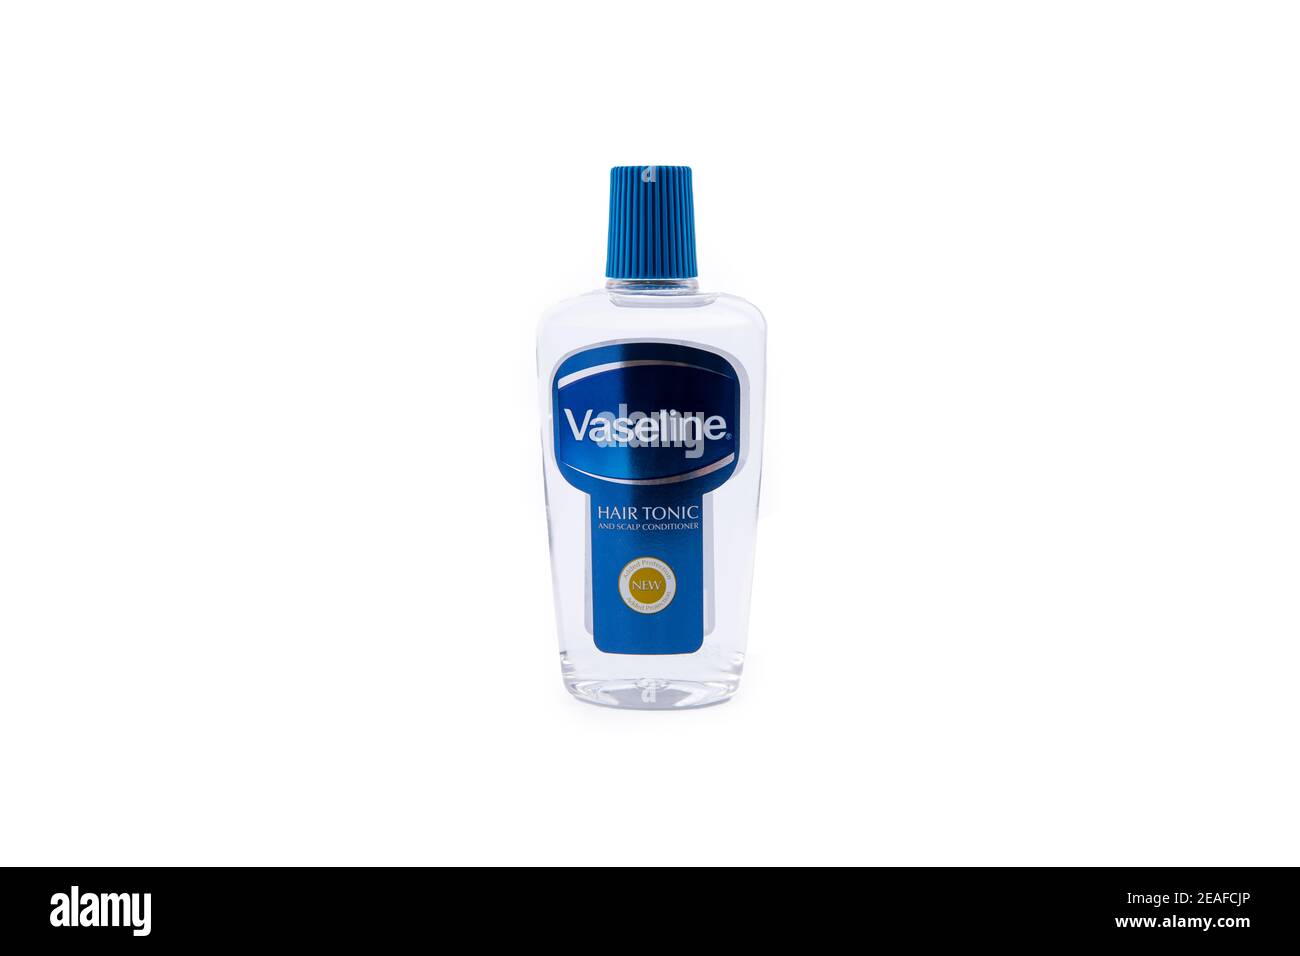 Vaseline Hair tonic on white background Stock Photo